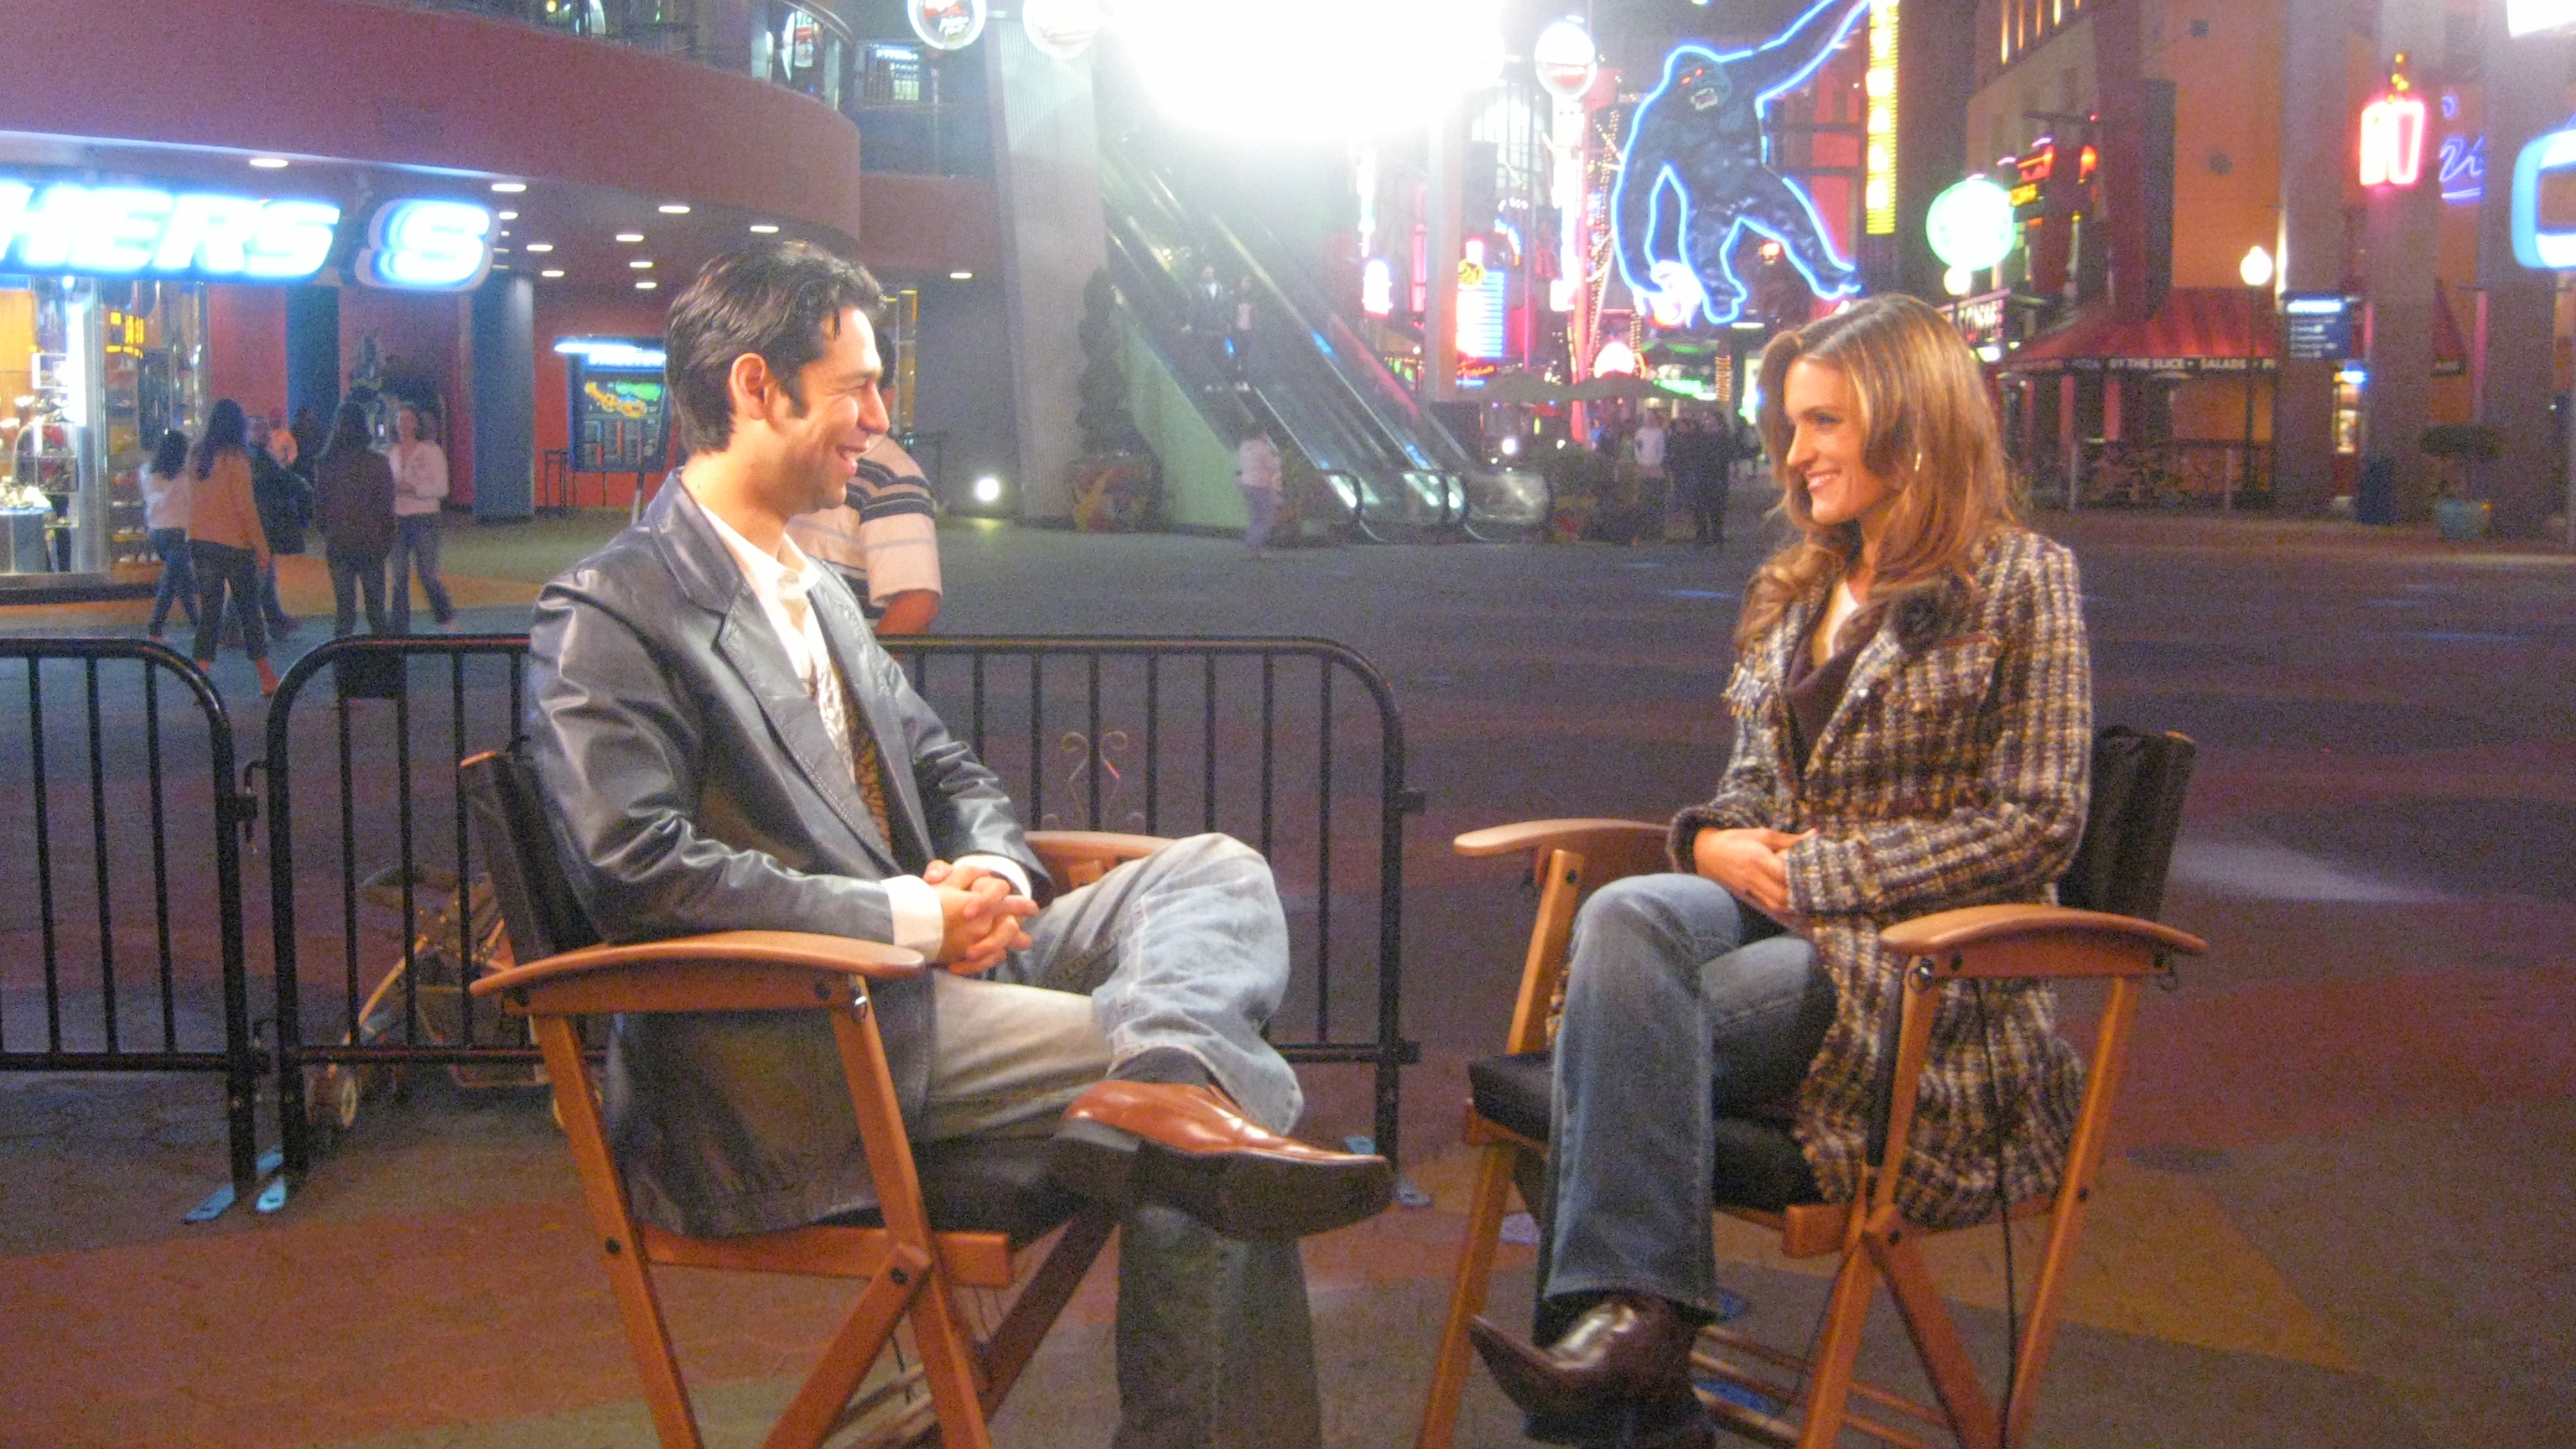 Interview @ Universal Studios.